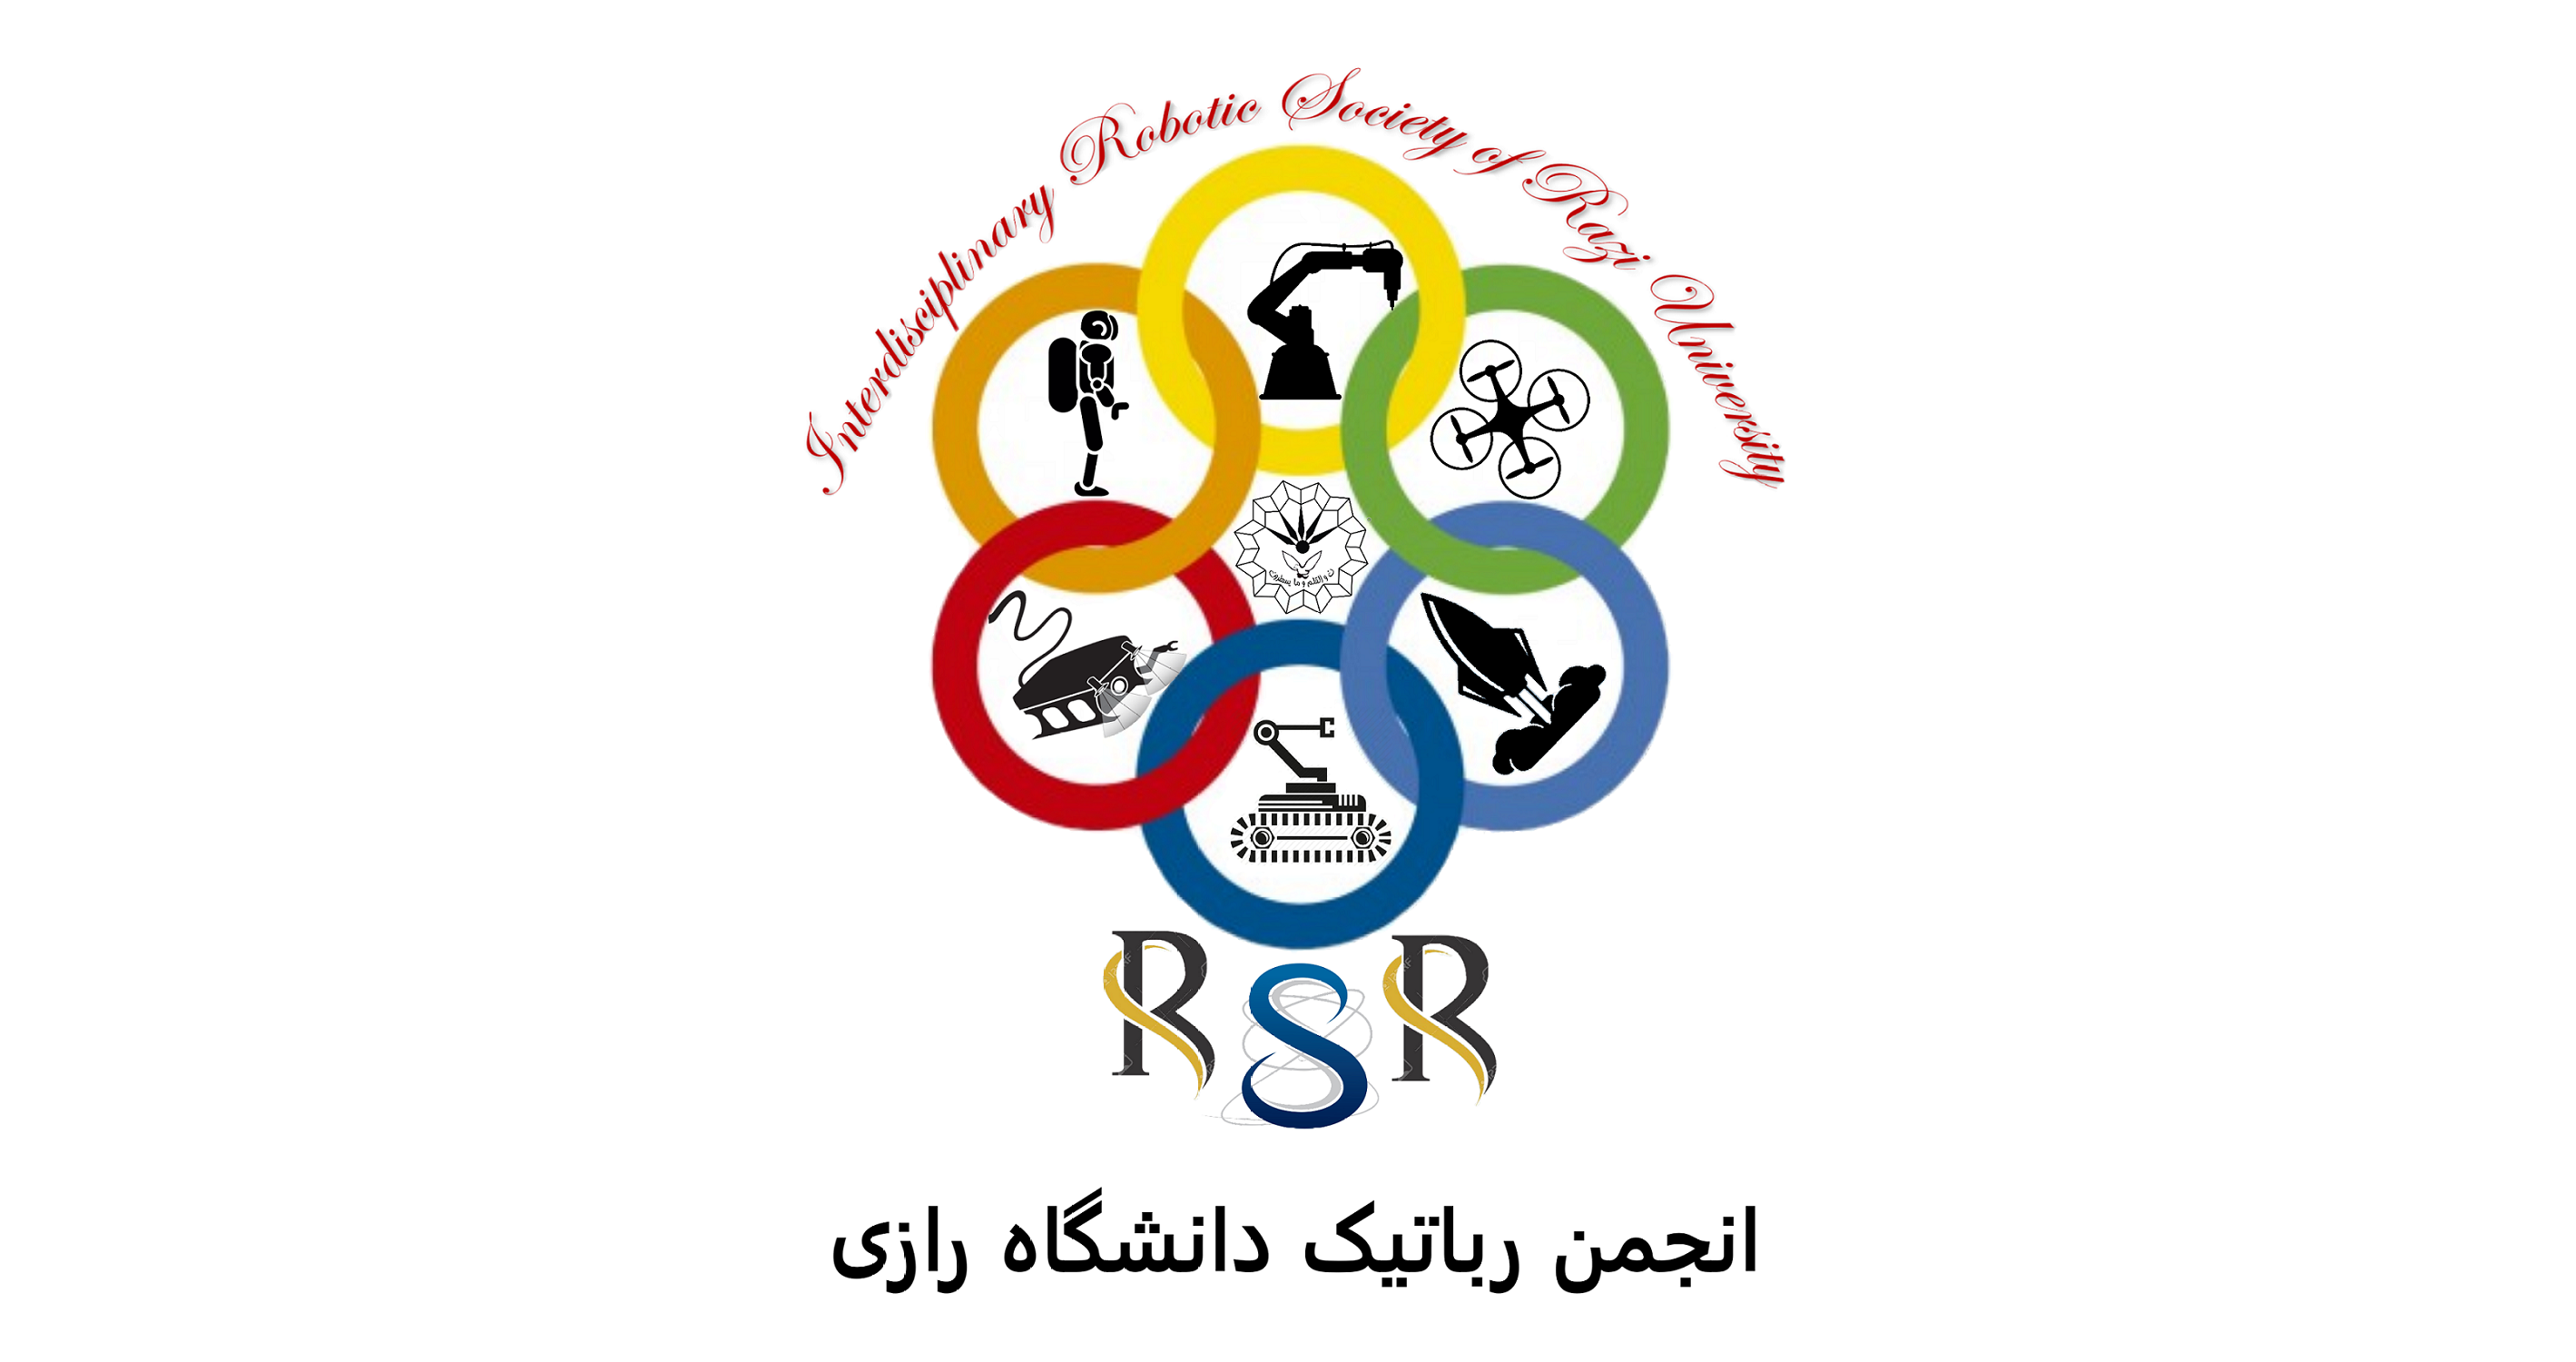 لوگو انجمن رباتیک دانشگاه رازی